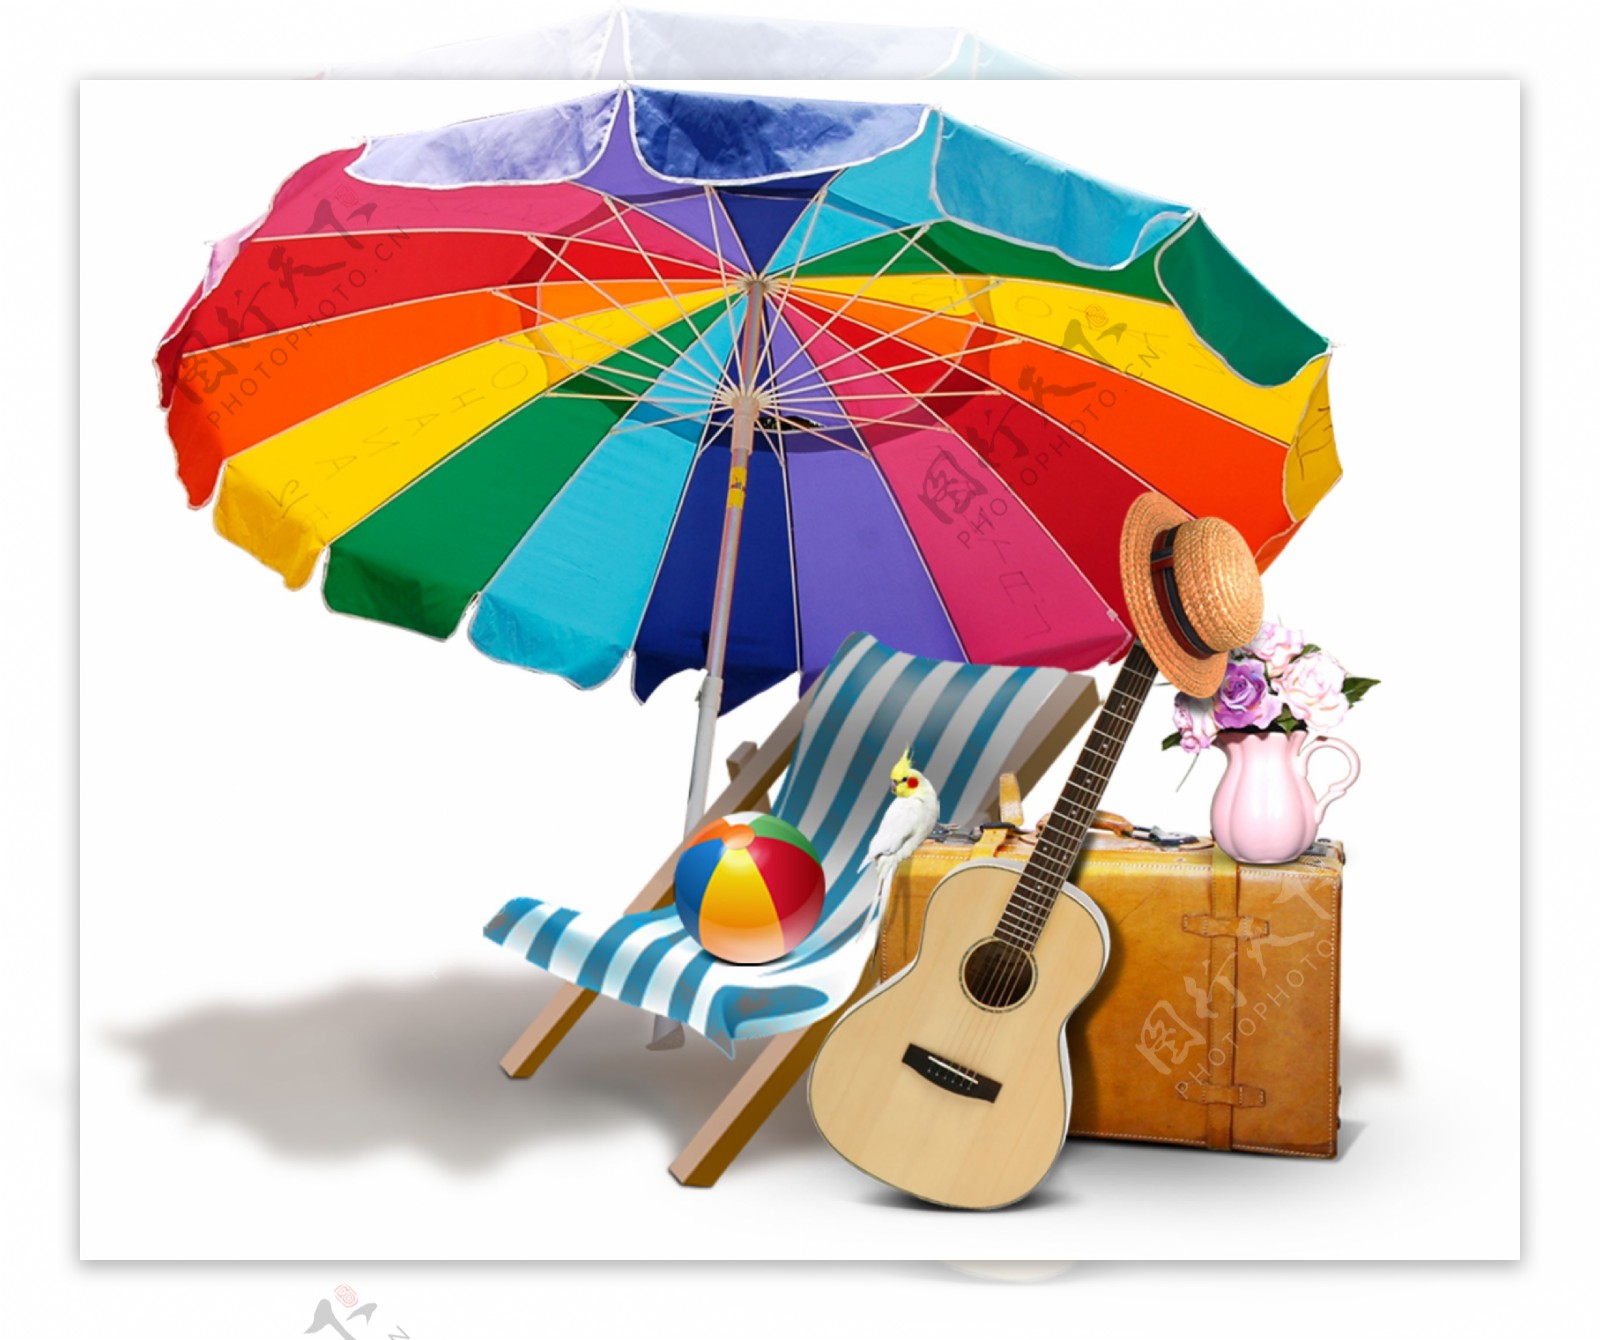 太阳伞下的躺椅吉他png元素素材